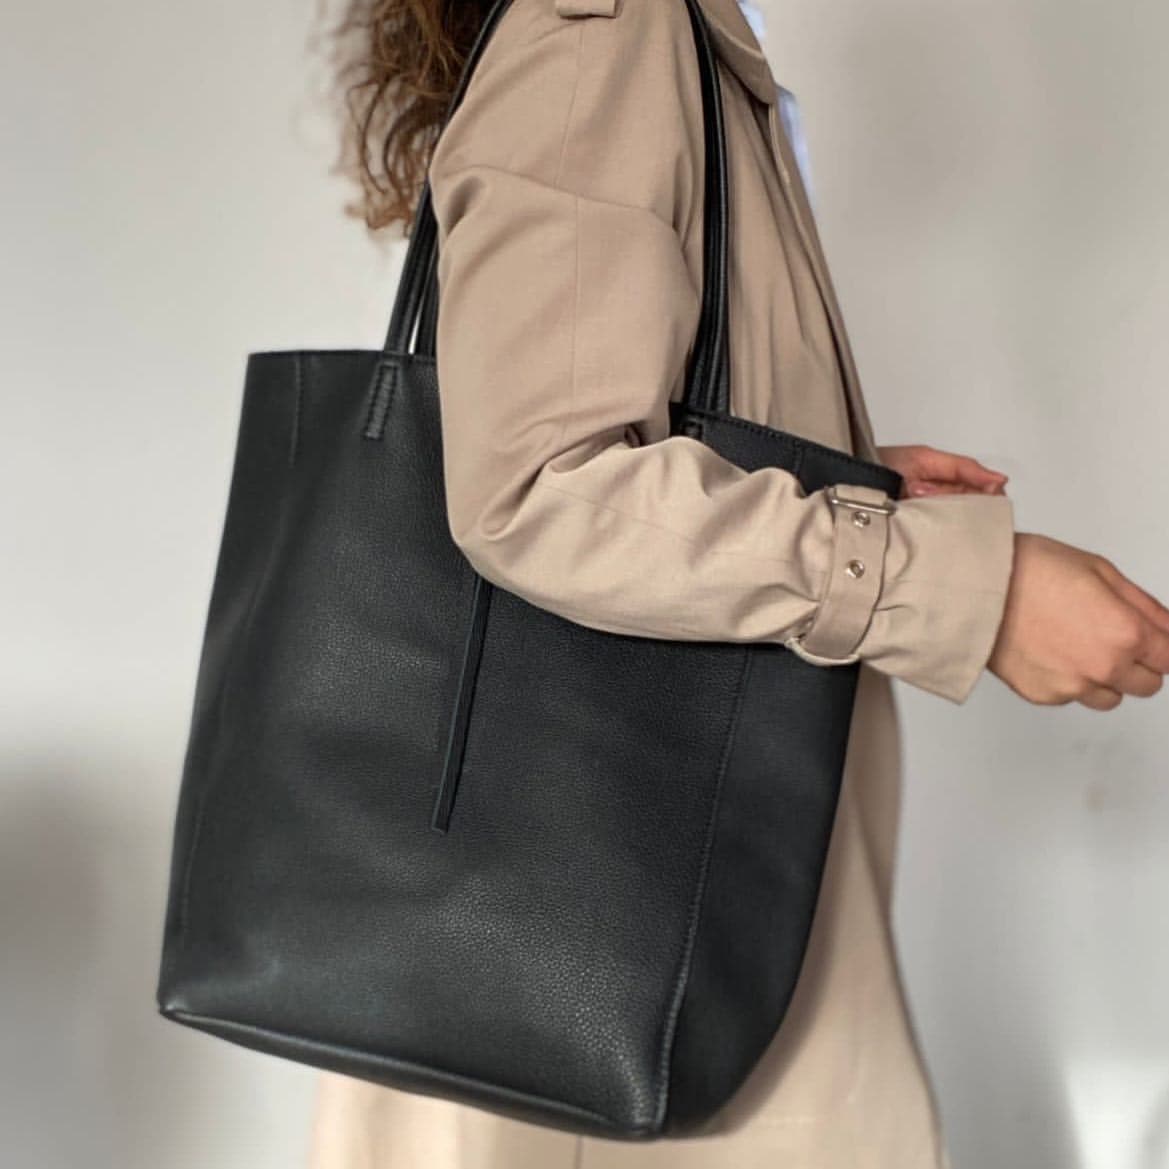 Leather bag "Anzio", Black